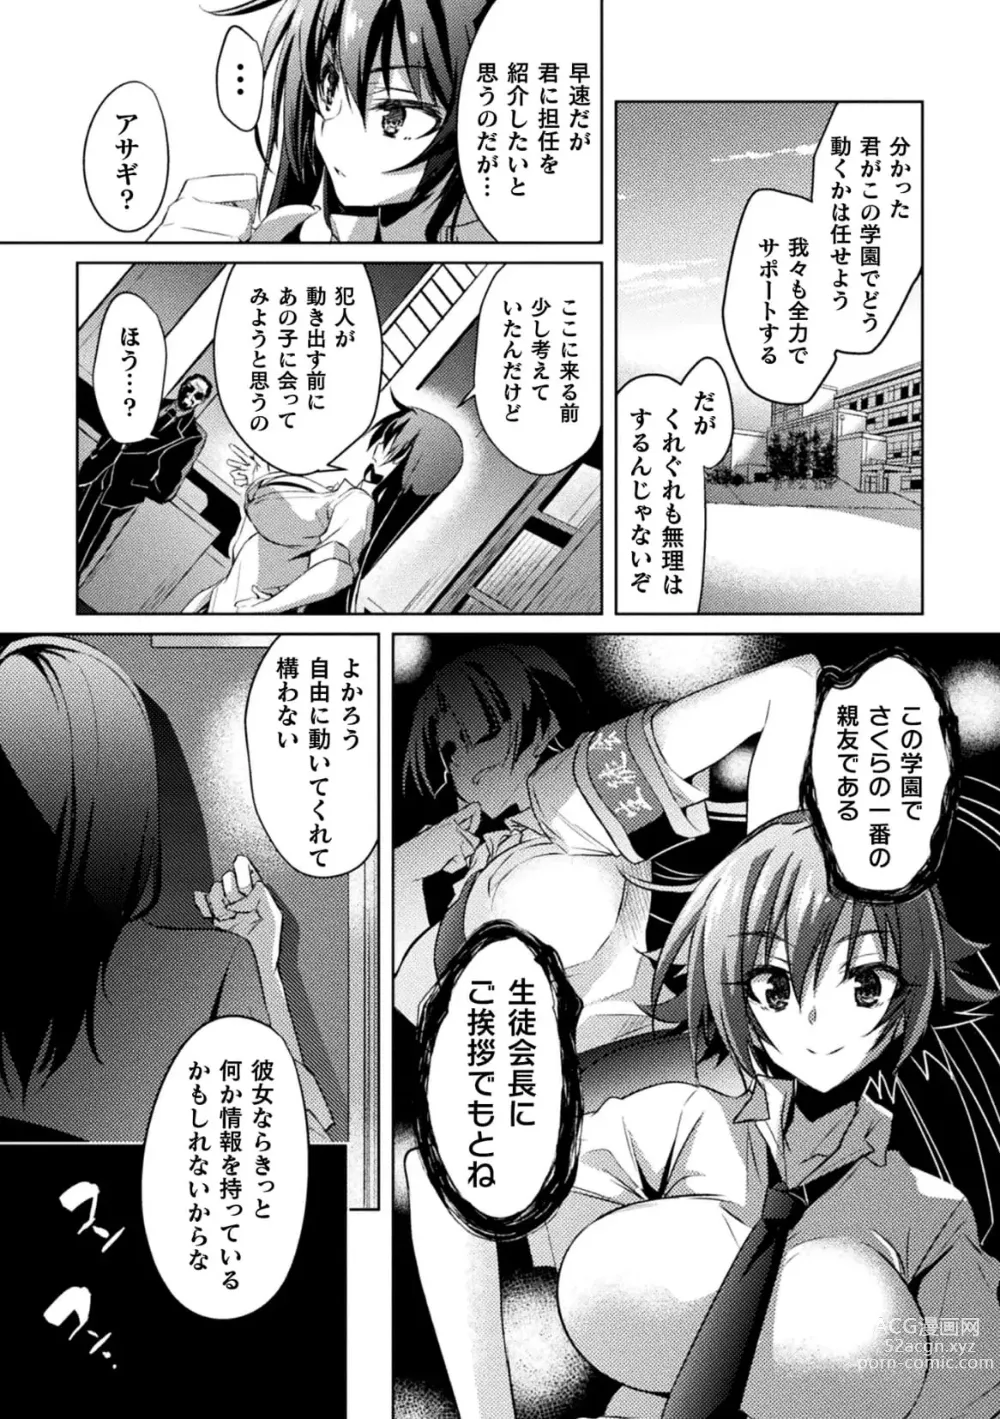 Page 12 of manga Taimanin Asagi ZERO THE COMIC vol 1